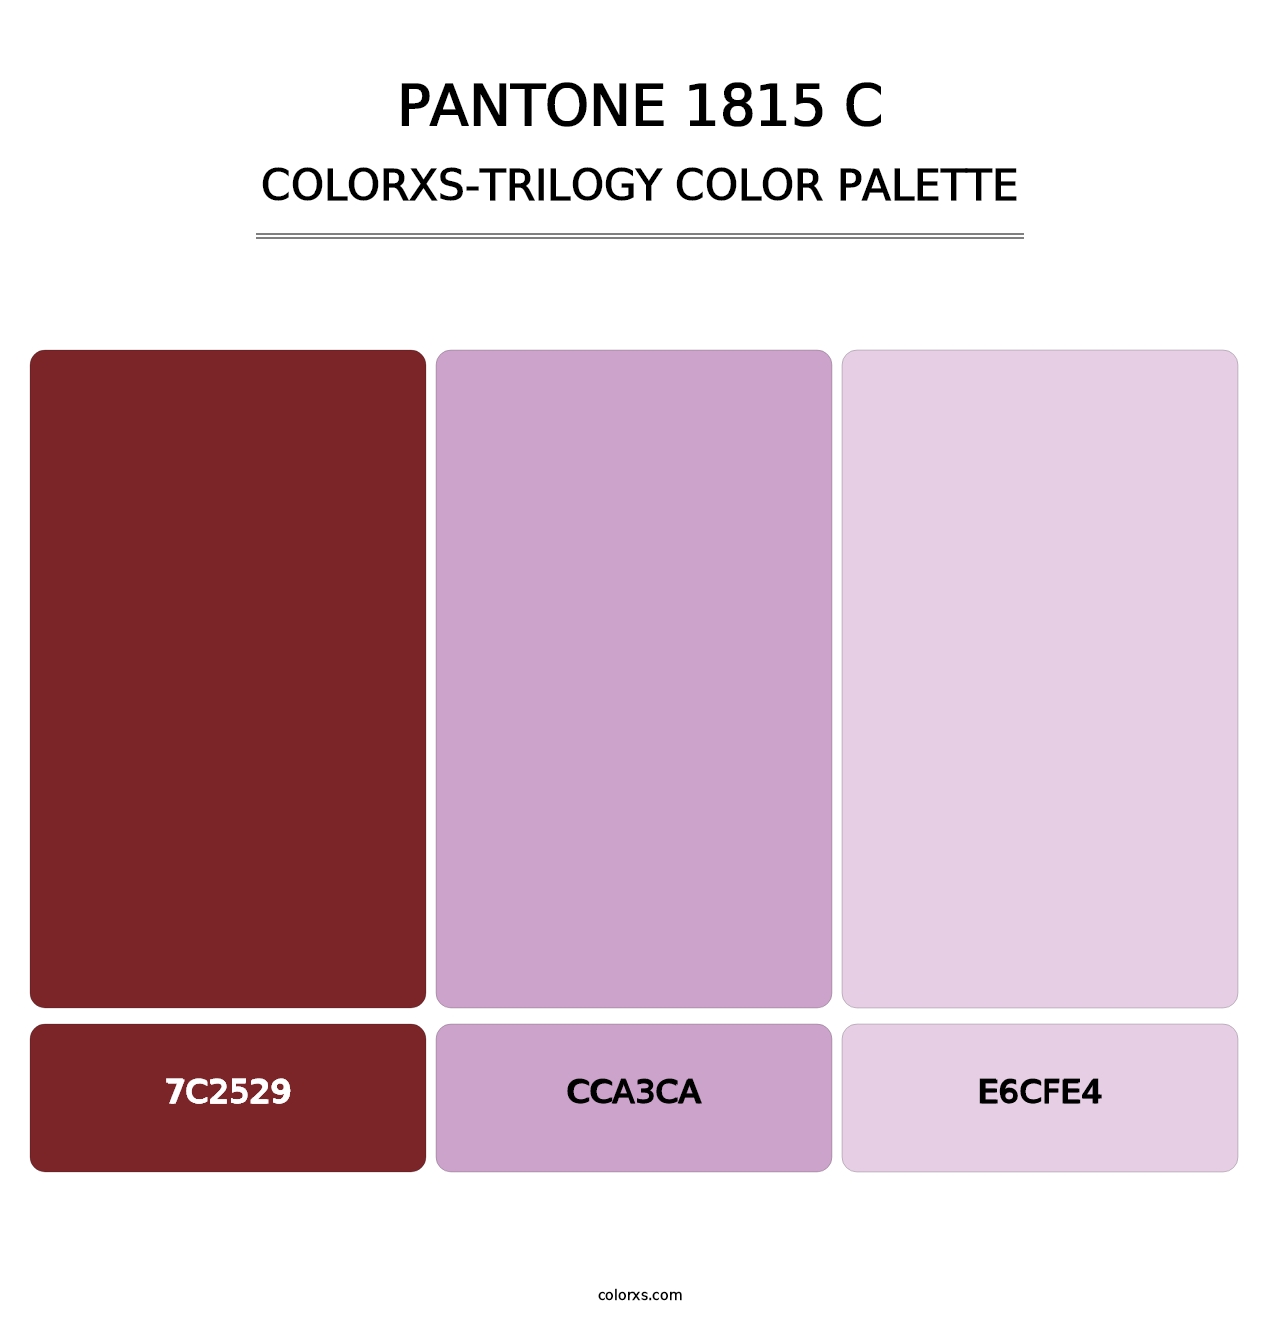 PANTONE 1815 C - Colorxs Trilogy Palette